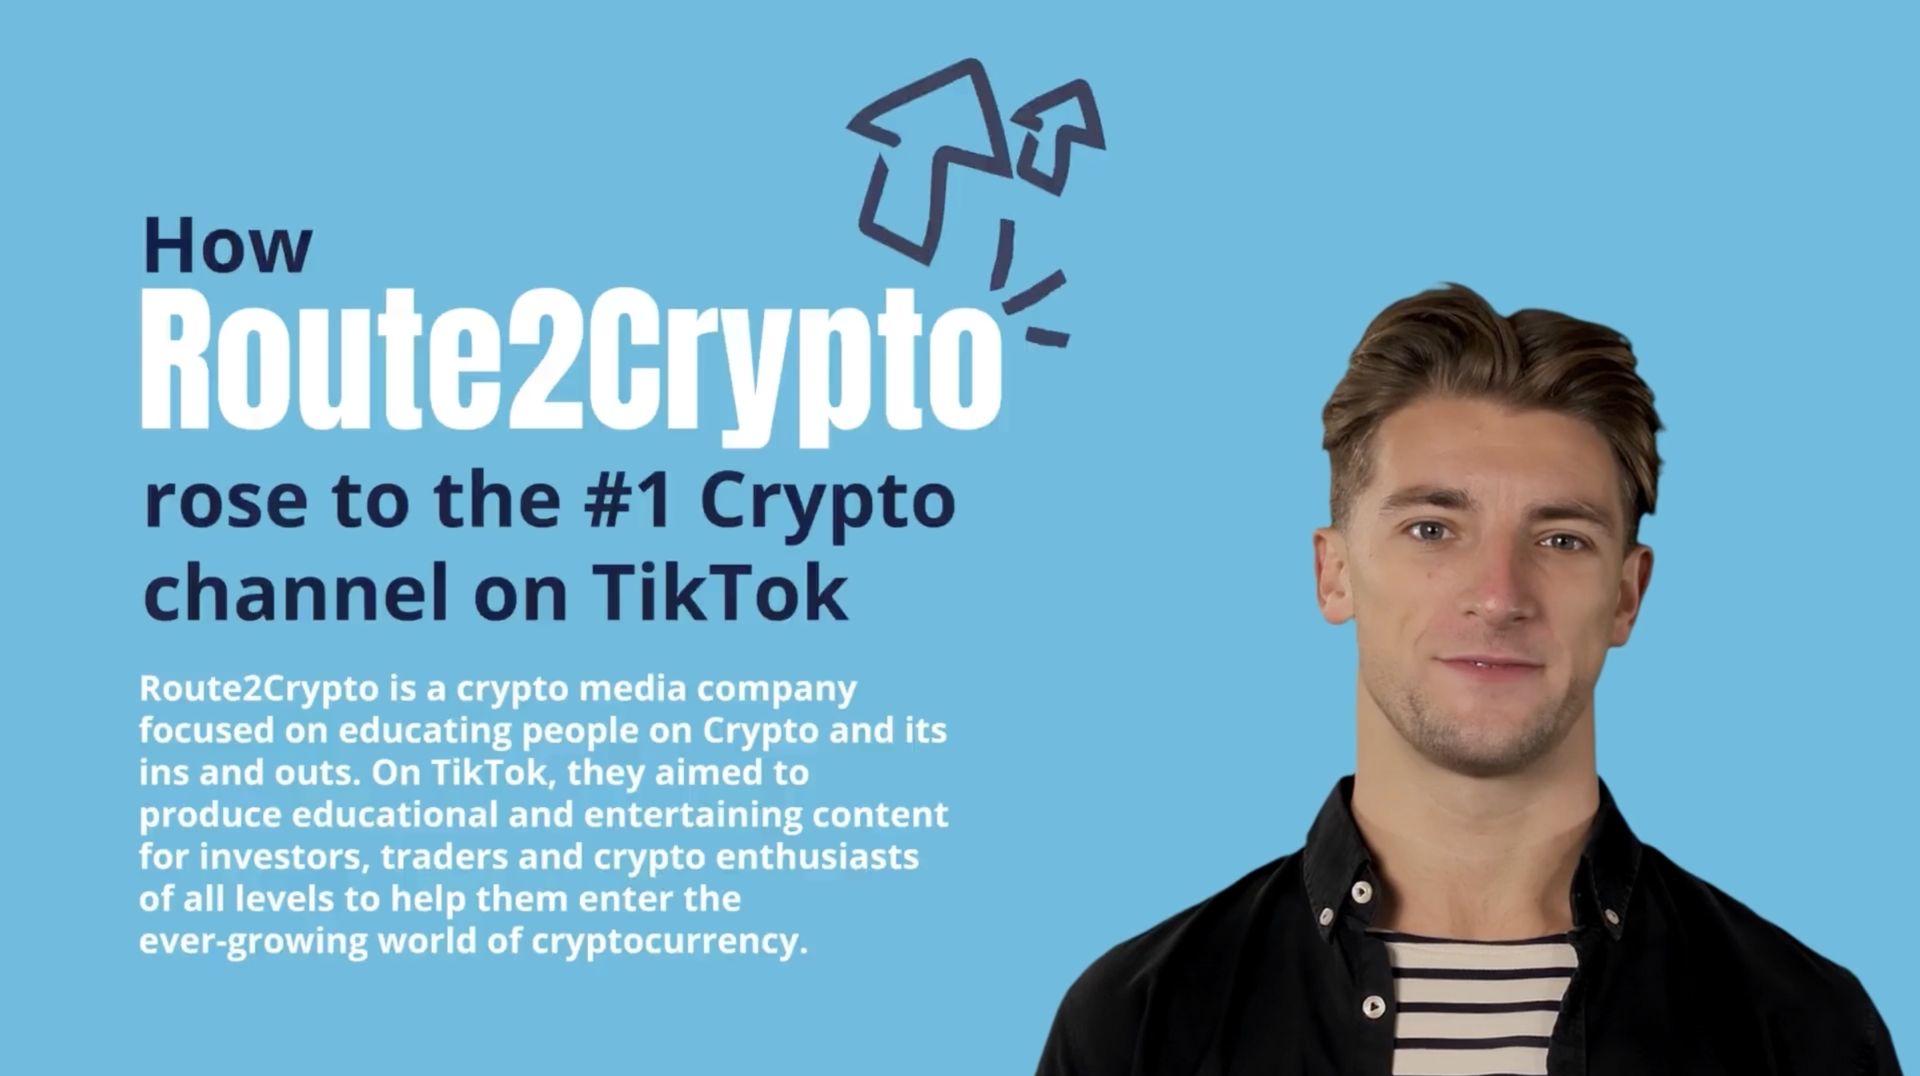 The Route2Crypto portfolio thumbnail